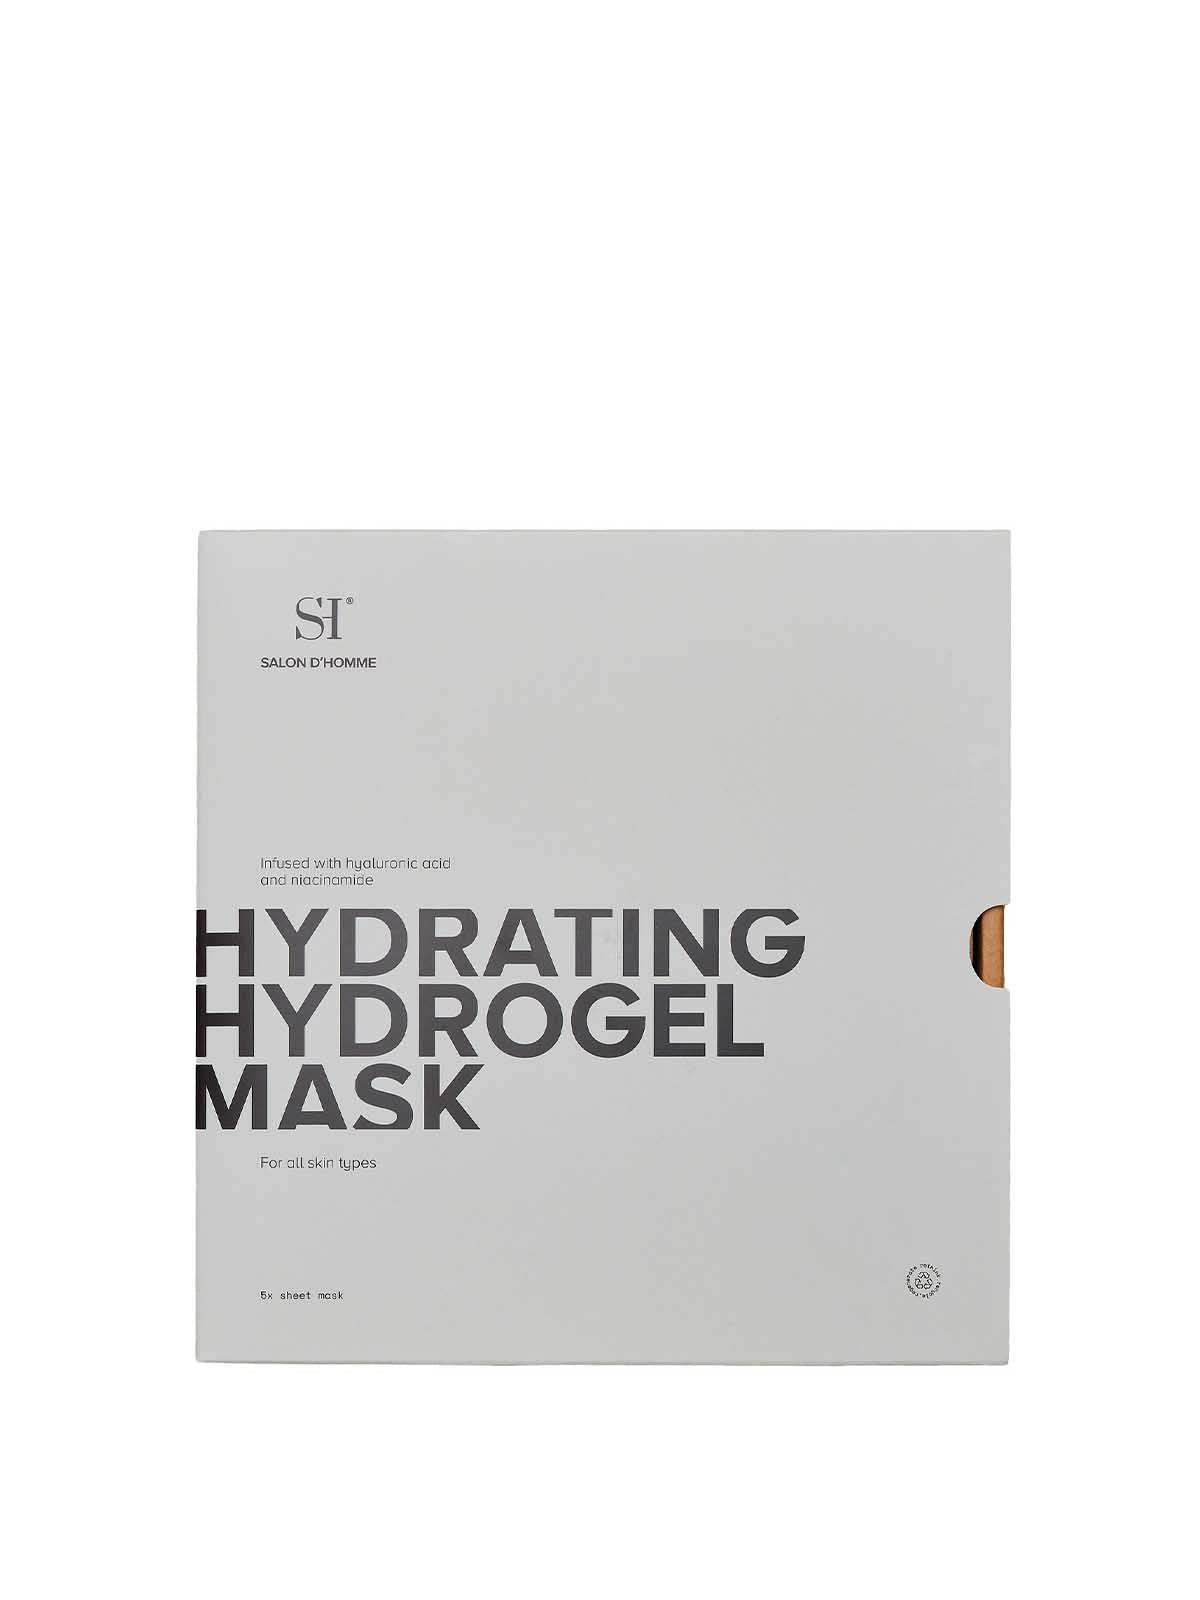 Hydrating Hydrogel Mask (5x)